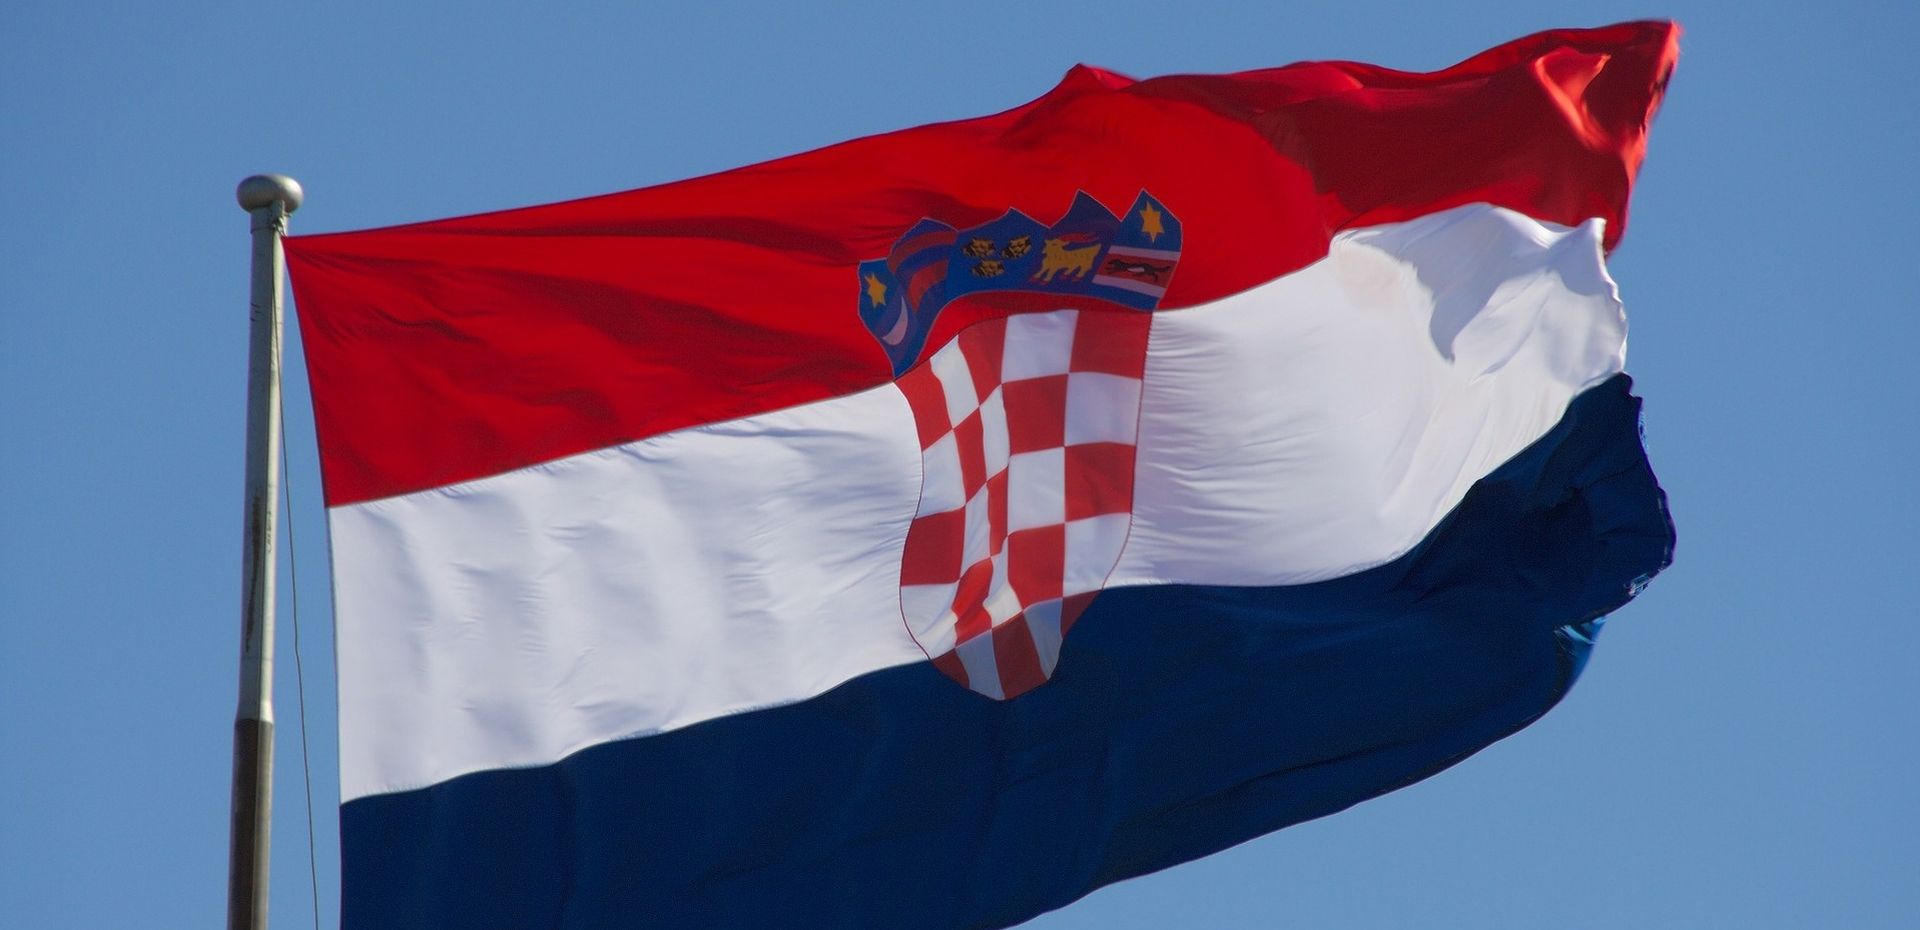 Hrvatska je europski prvak u kvartalnom rastu BDP-a: Eurostat